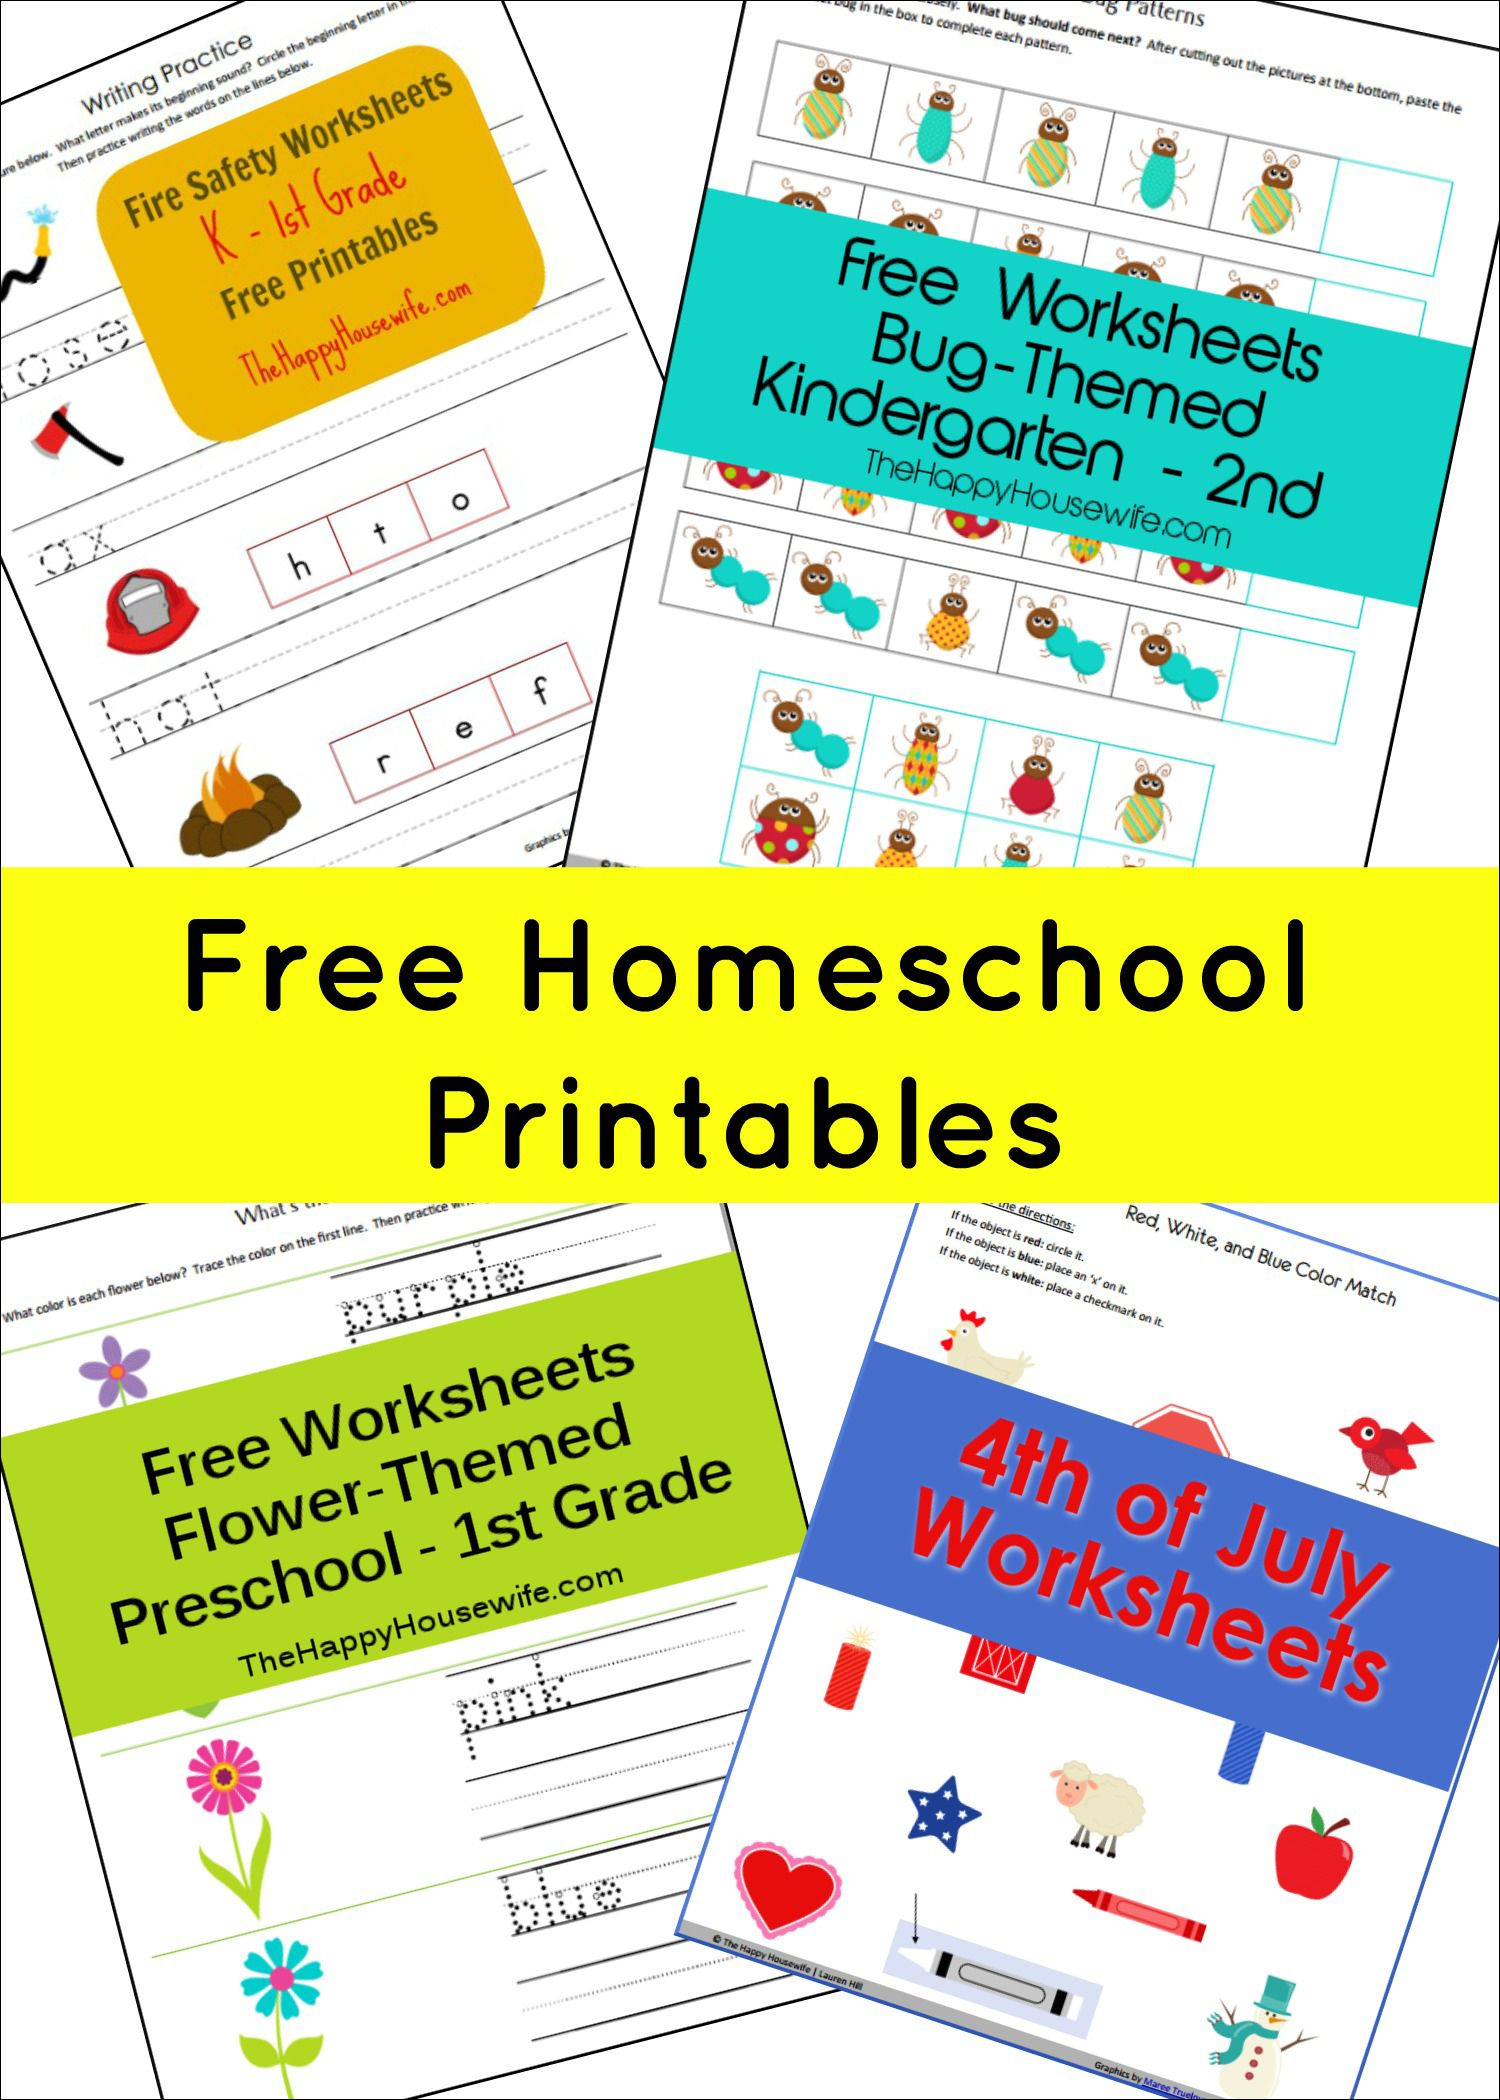 Free Printable Worksheets | Free Printables | Homeschool, Homeschool - Free Homeschool Printable Worksheets